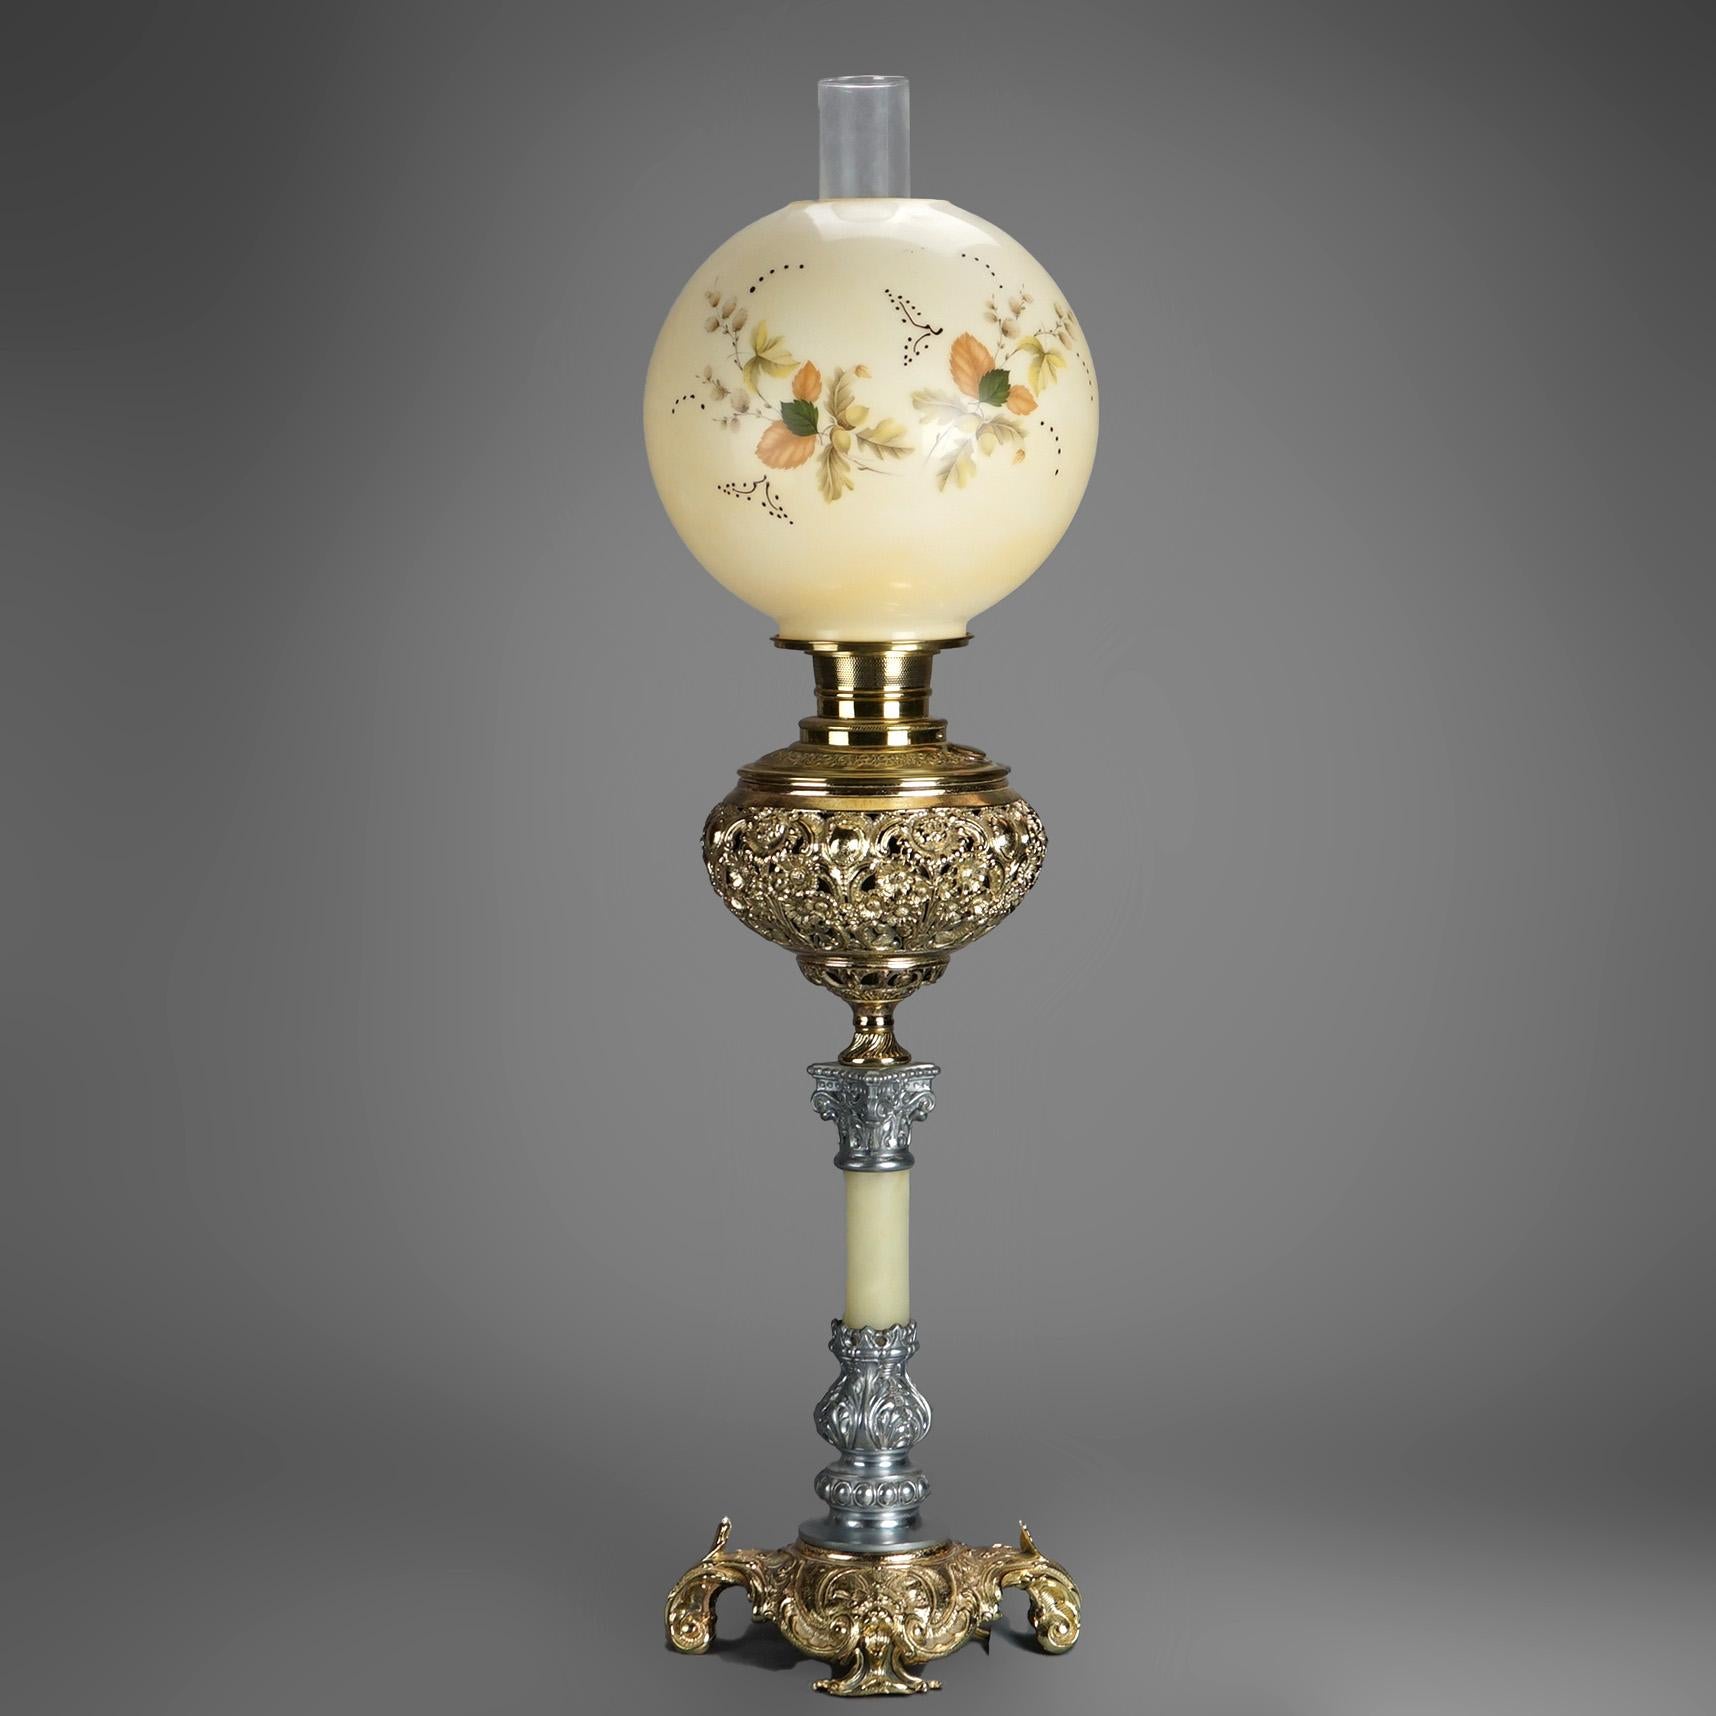 Eine antike viktorianische Wohnzimmerlampe bietet eine handbemalte Glaskugel mit Blättern über vergoldetem Metall und eine netzartige Schrift auf einem Onyxsockel mit korinthischer Säule, elektrifiziert, um 1890

Maße - 25 